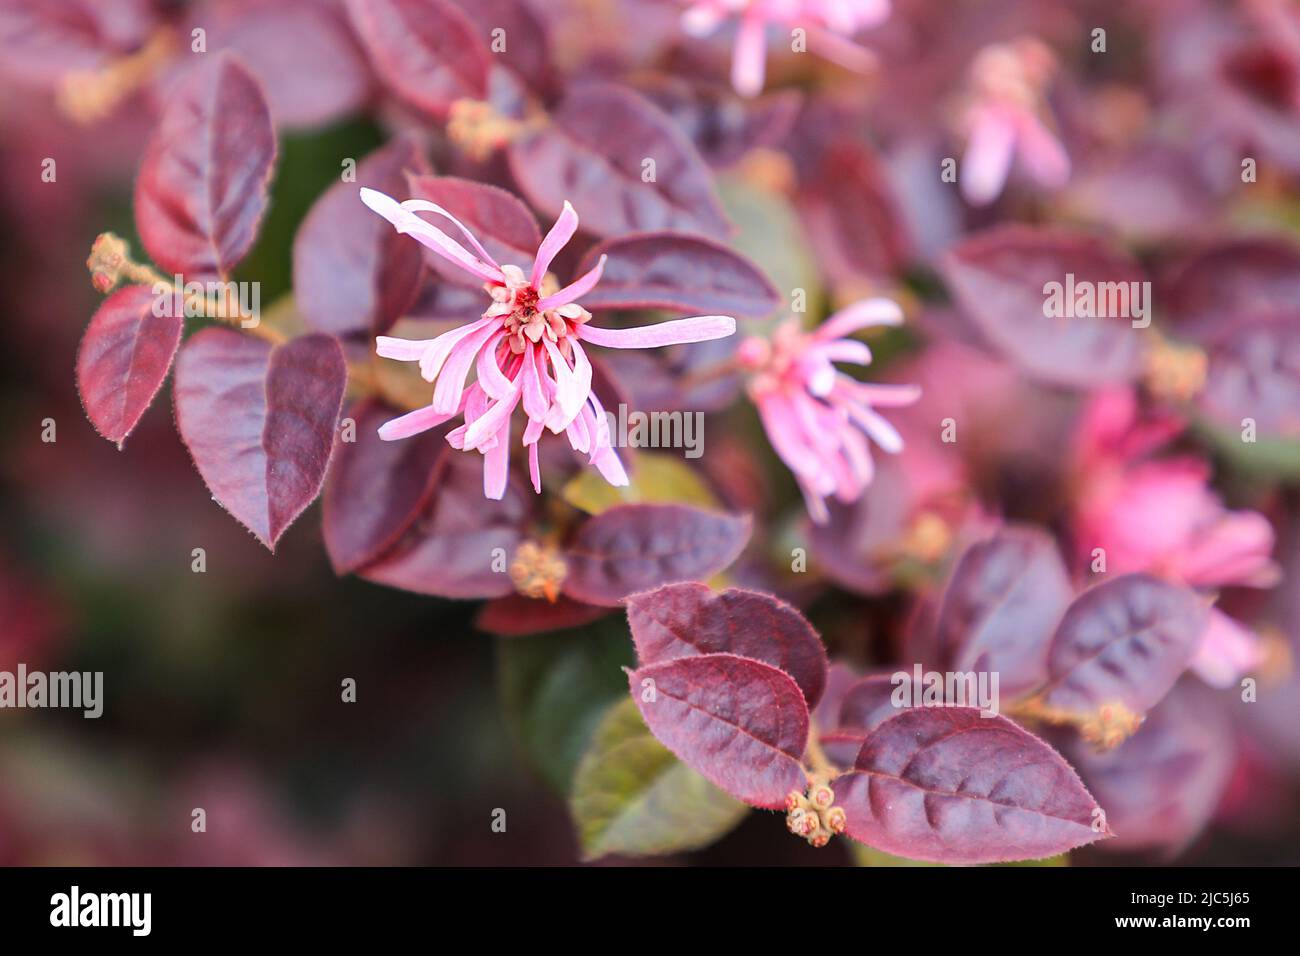 A pink flowering Loropetalum or Chinese fringe flower (Loropetalum chinense) or strap flower bush or shrub Stock Photo